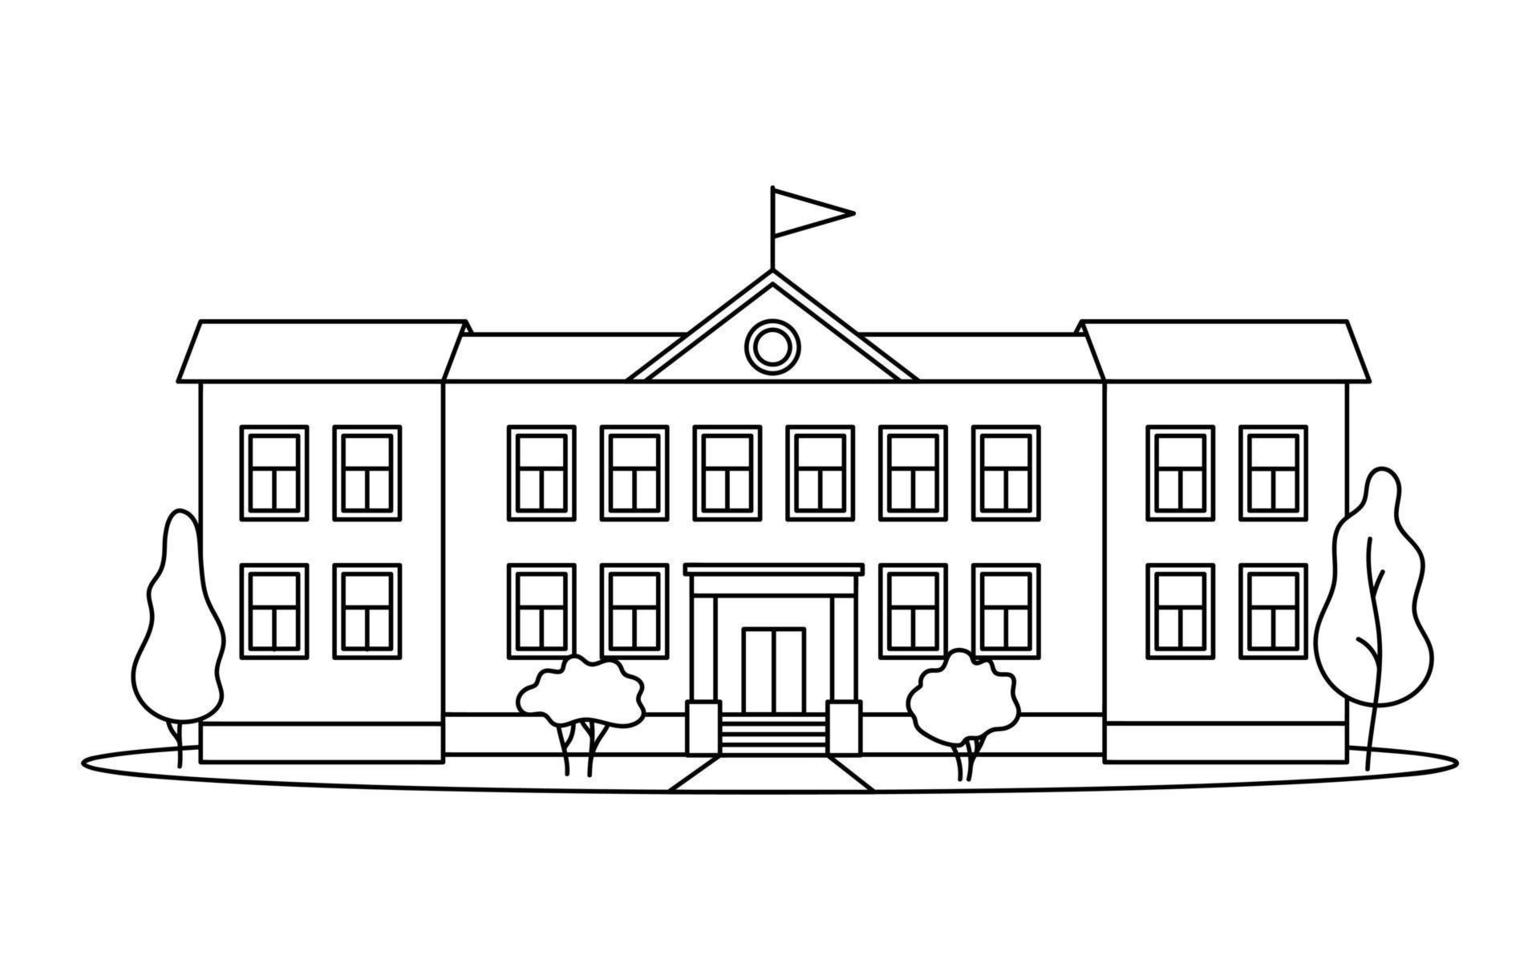 bâtiment scolaire classique avec des colonnes pour enfants ou élève dessinées avec des lignes noires de contour sur fond blanc. vecteur